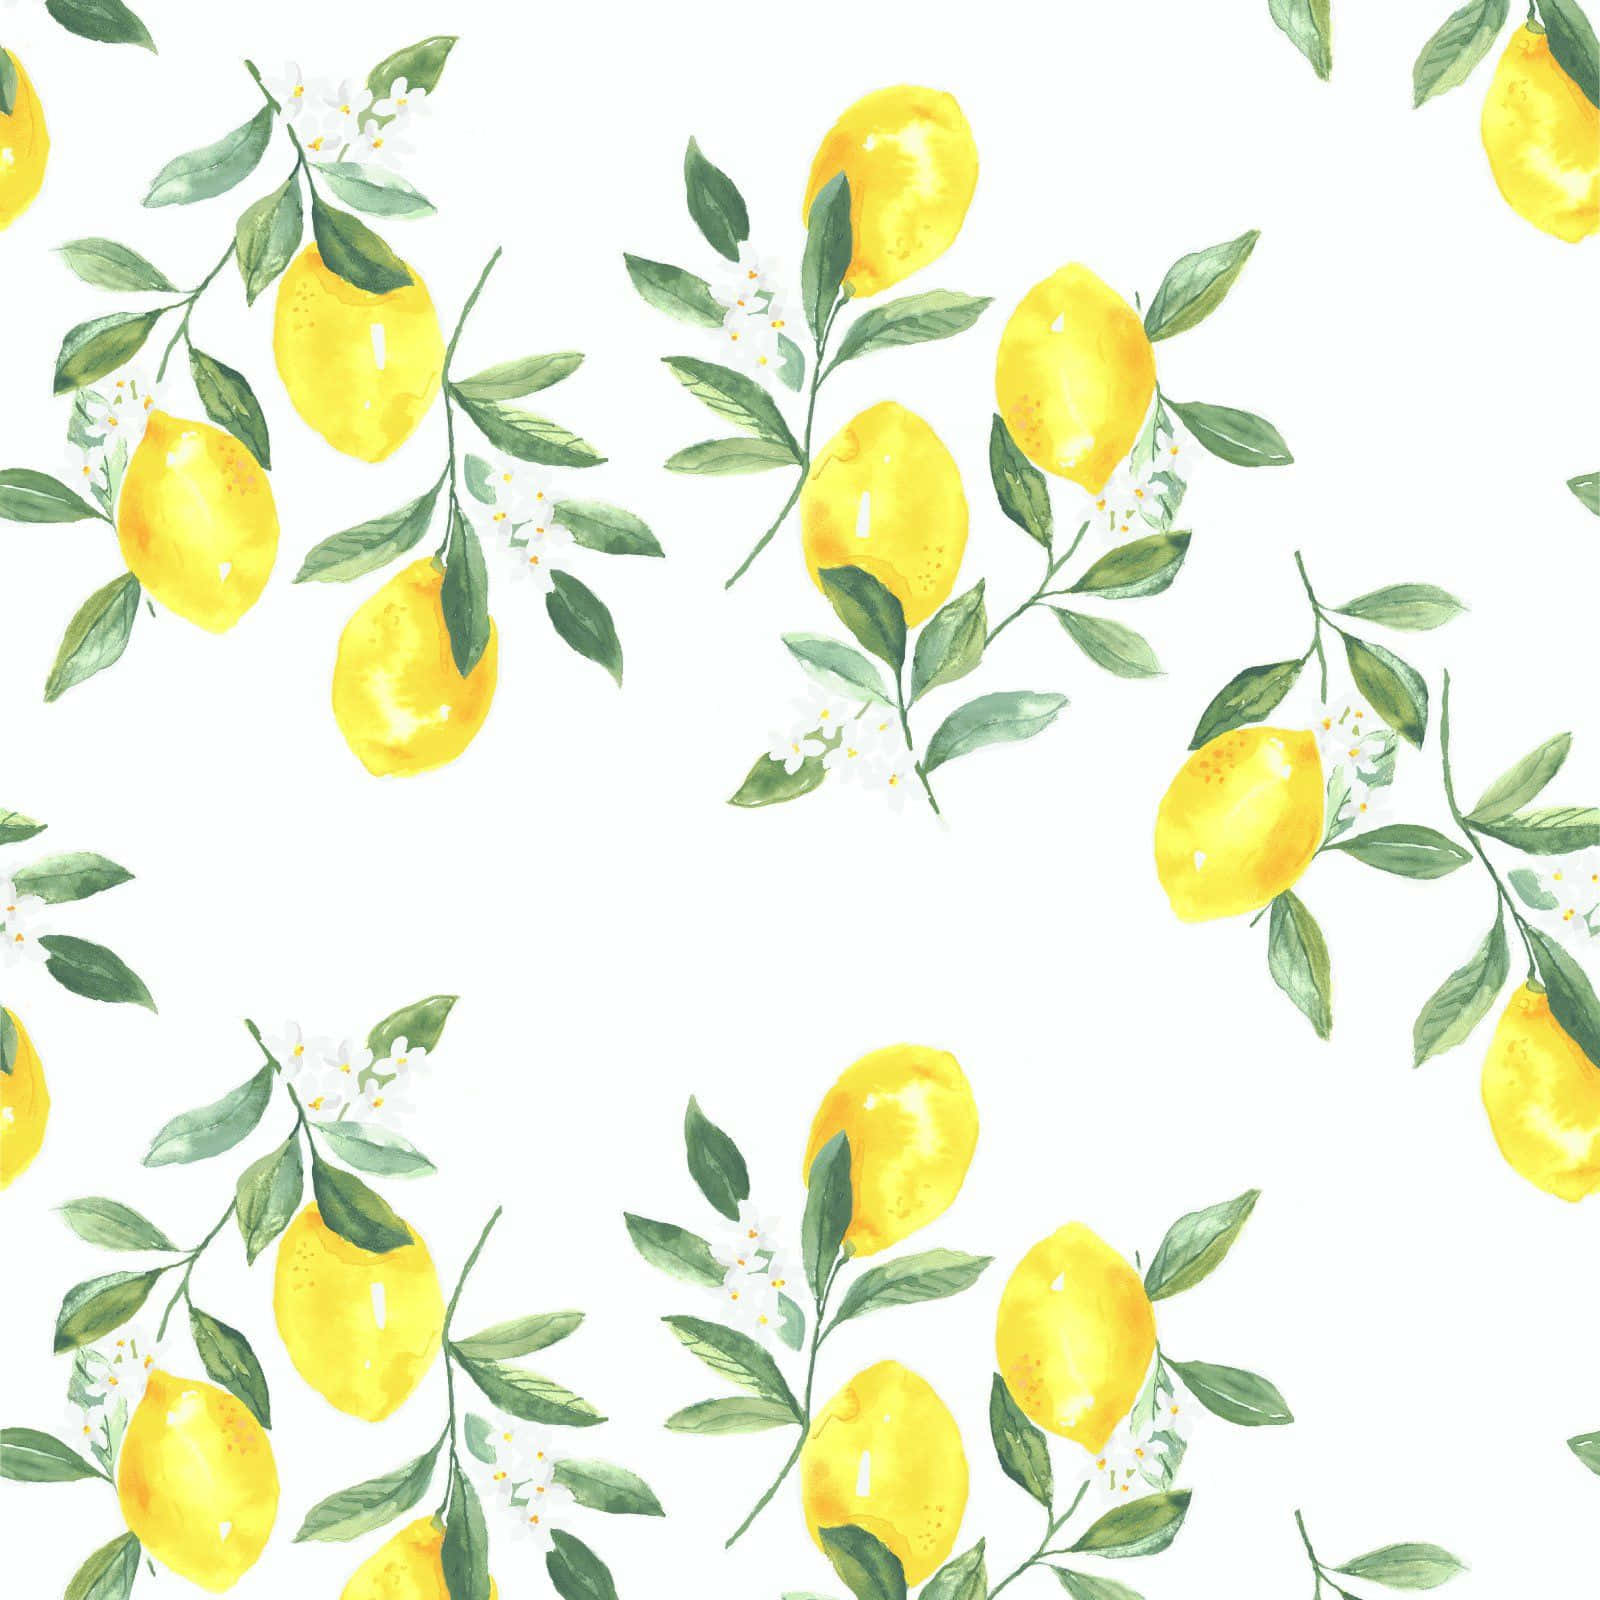 Erfrischedeinen Tag Mit Dem Lebendigen Zitronen Iphone. Wallpaper